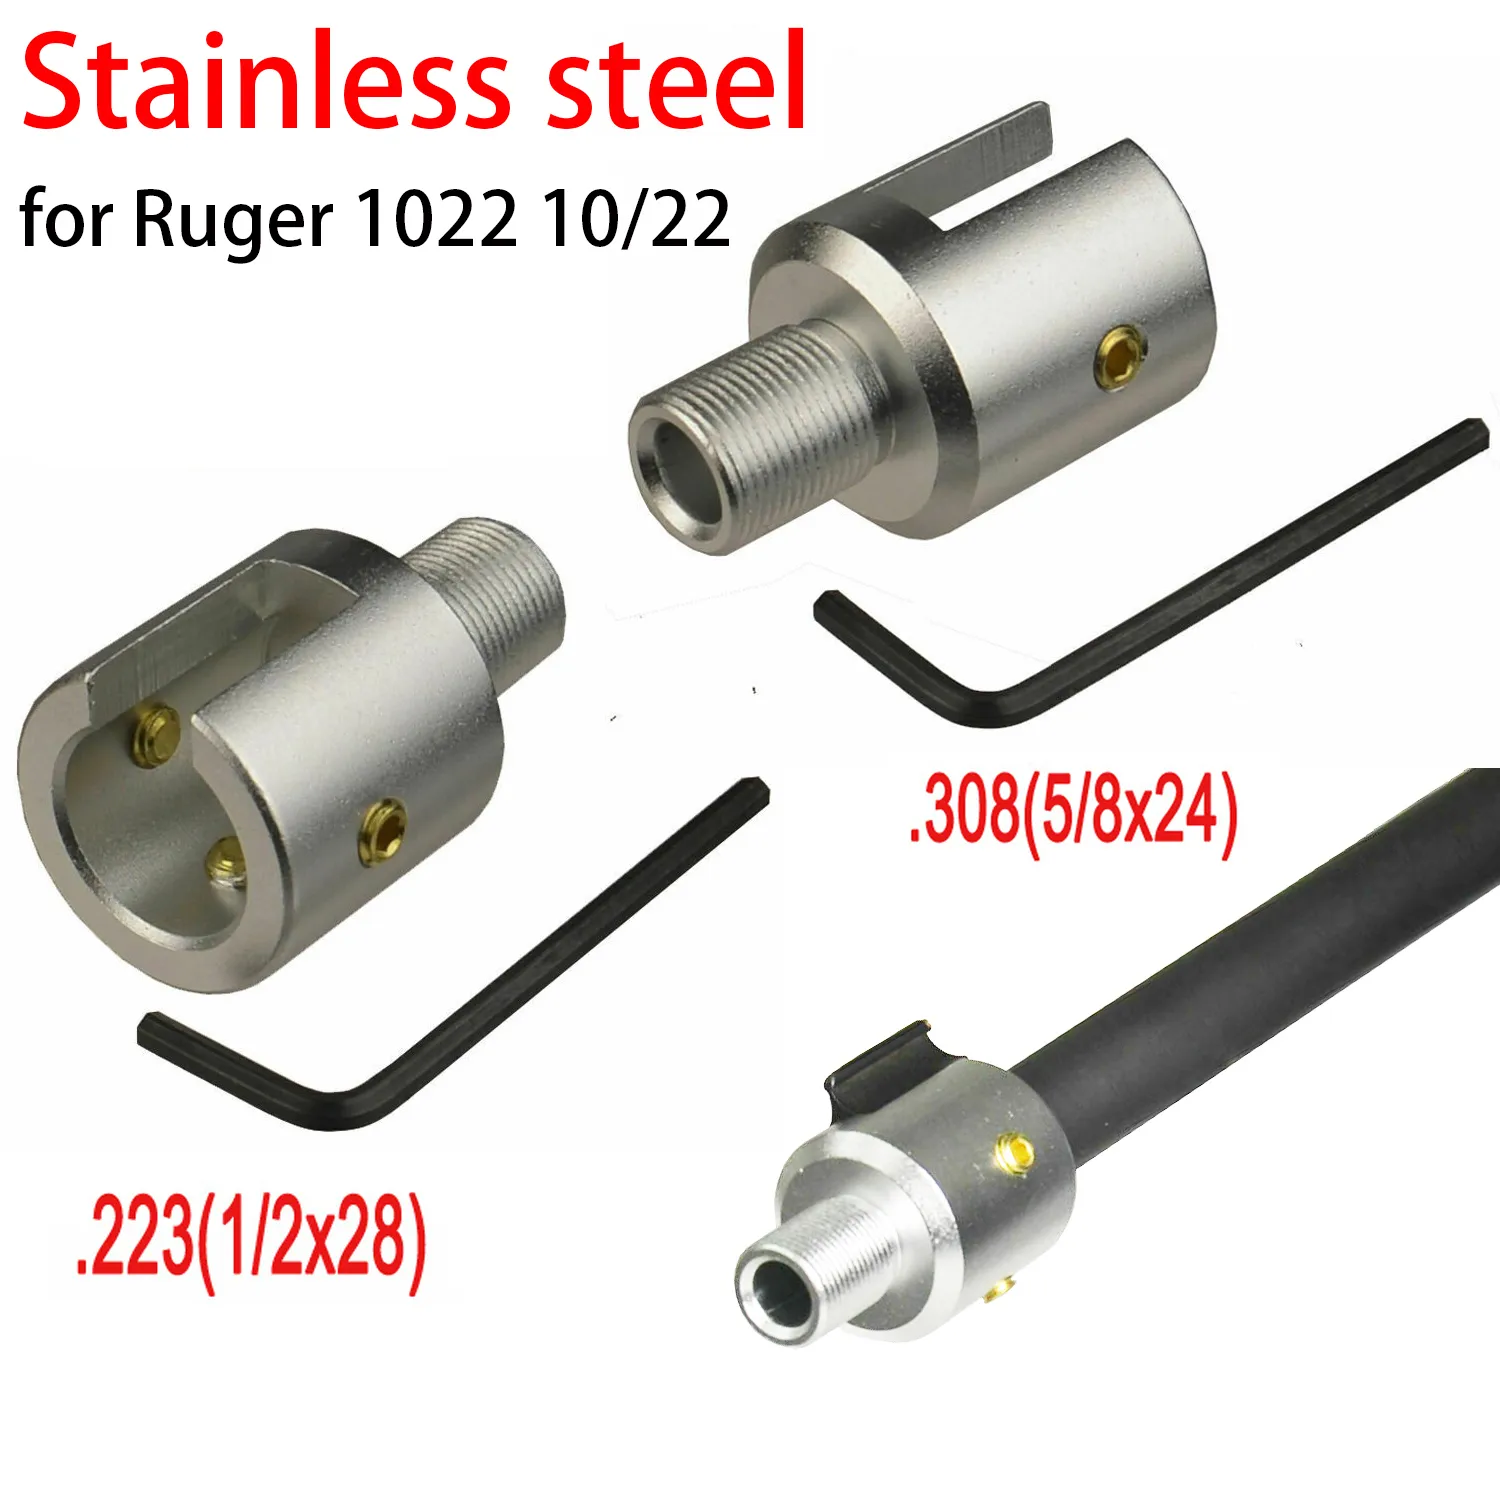 لفلتر الوقود من الفولاذ المقاوم للصدأ برميل نهاية الحامي ل Ruger 1022 10/22 كمامة الفرامل 1/2x28 5/8x24 التحرير والسرد.